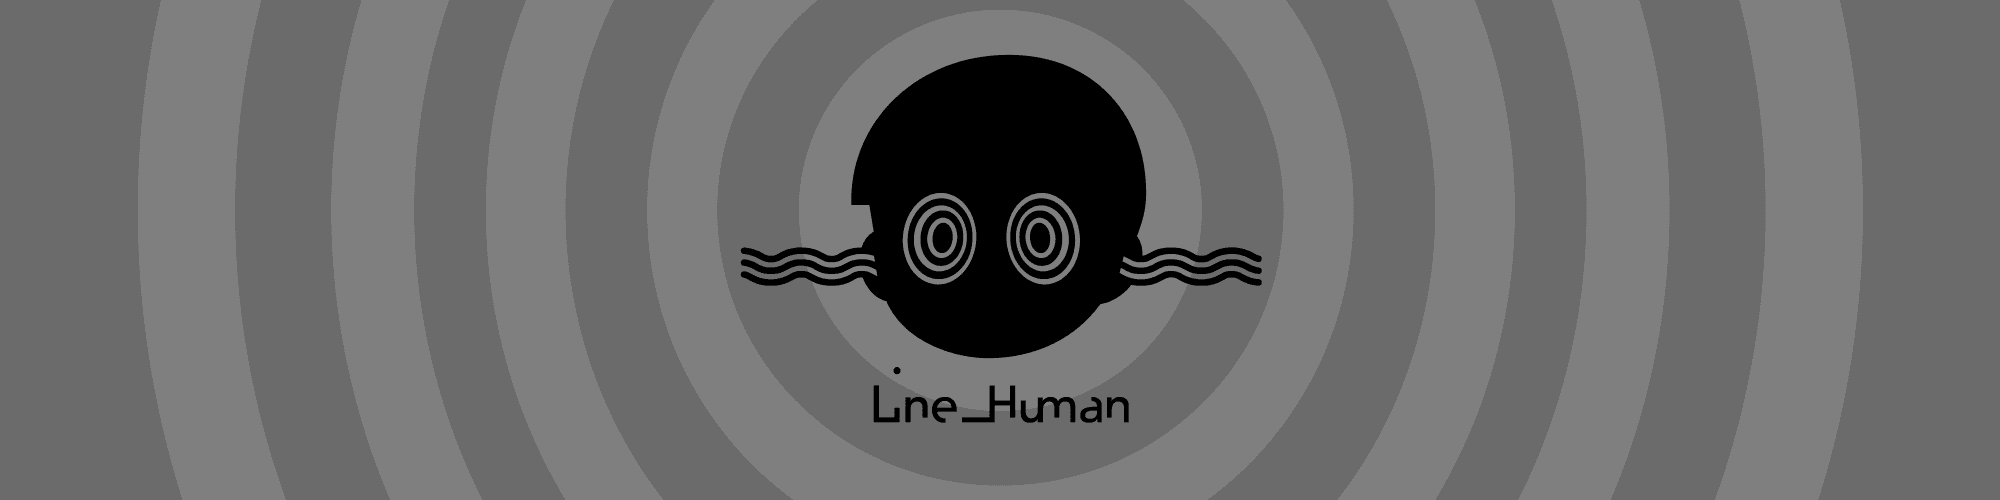 Line_Human